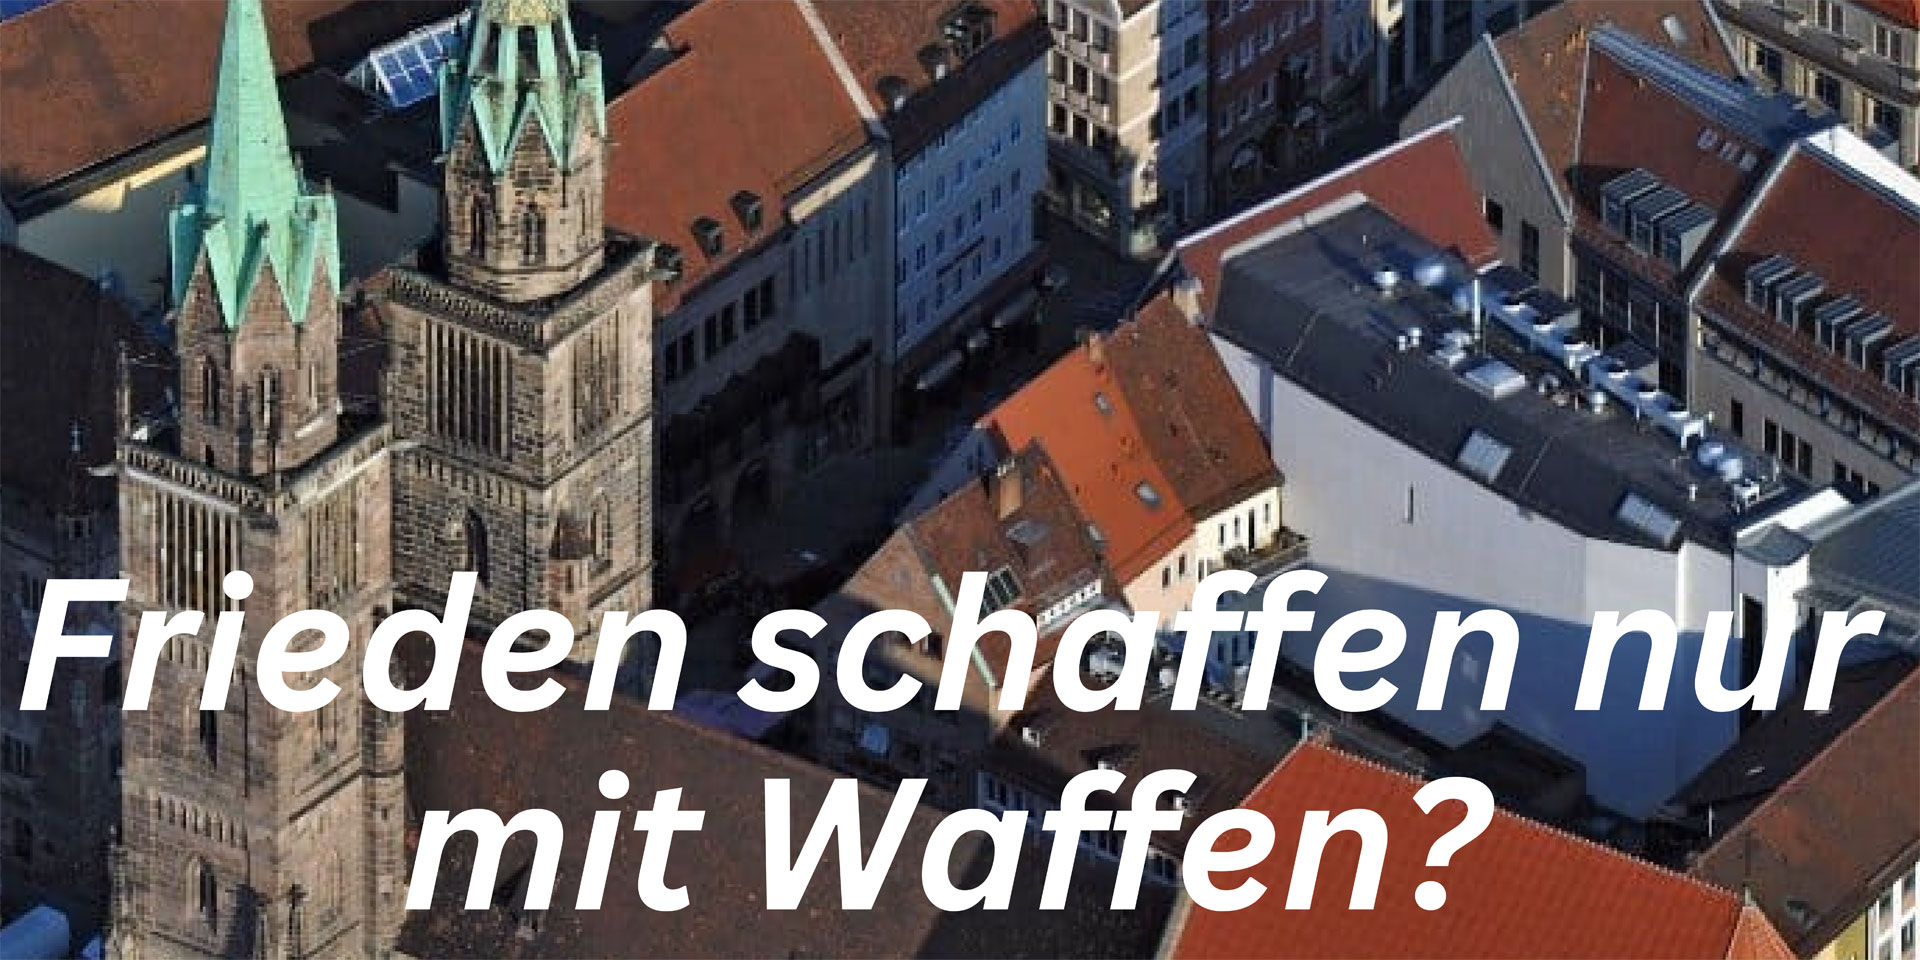 Der Kommentargottesdienst in der Lorenzkirche Nürnberg widmet sich seit 50 Jahren aktuellen Ereignissen der Zeit .